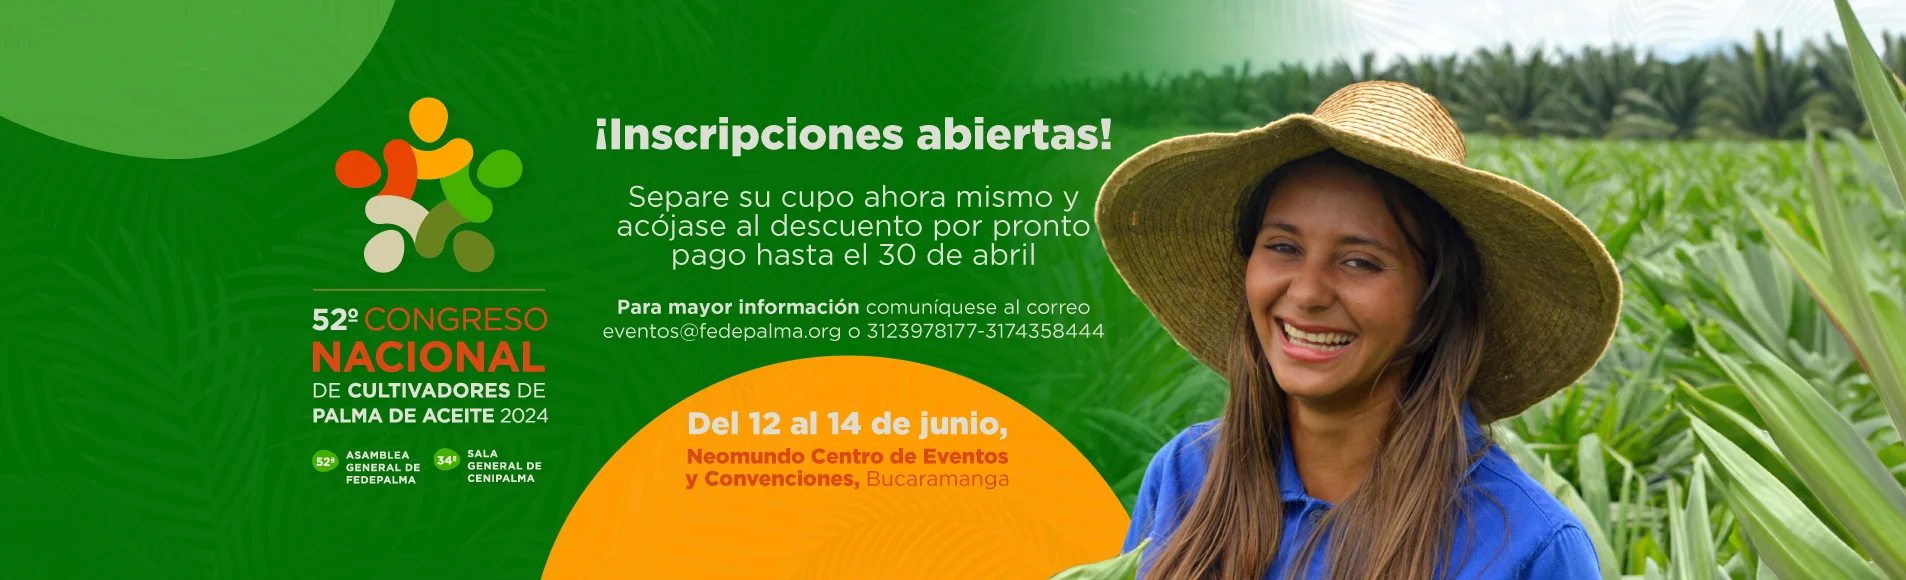 52° Congreso Nacional de Cultivadores de Palma 2024